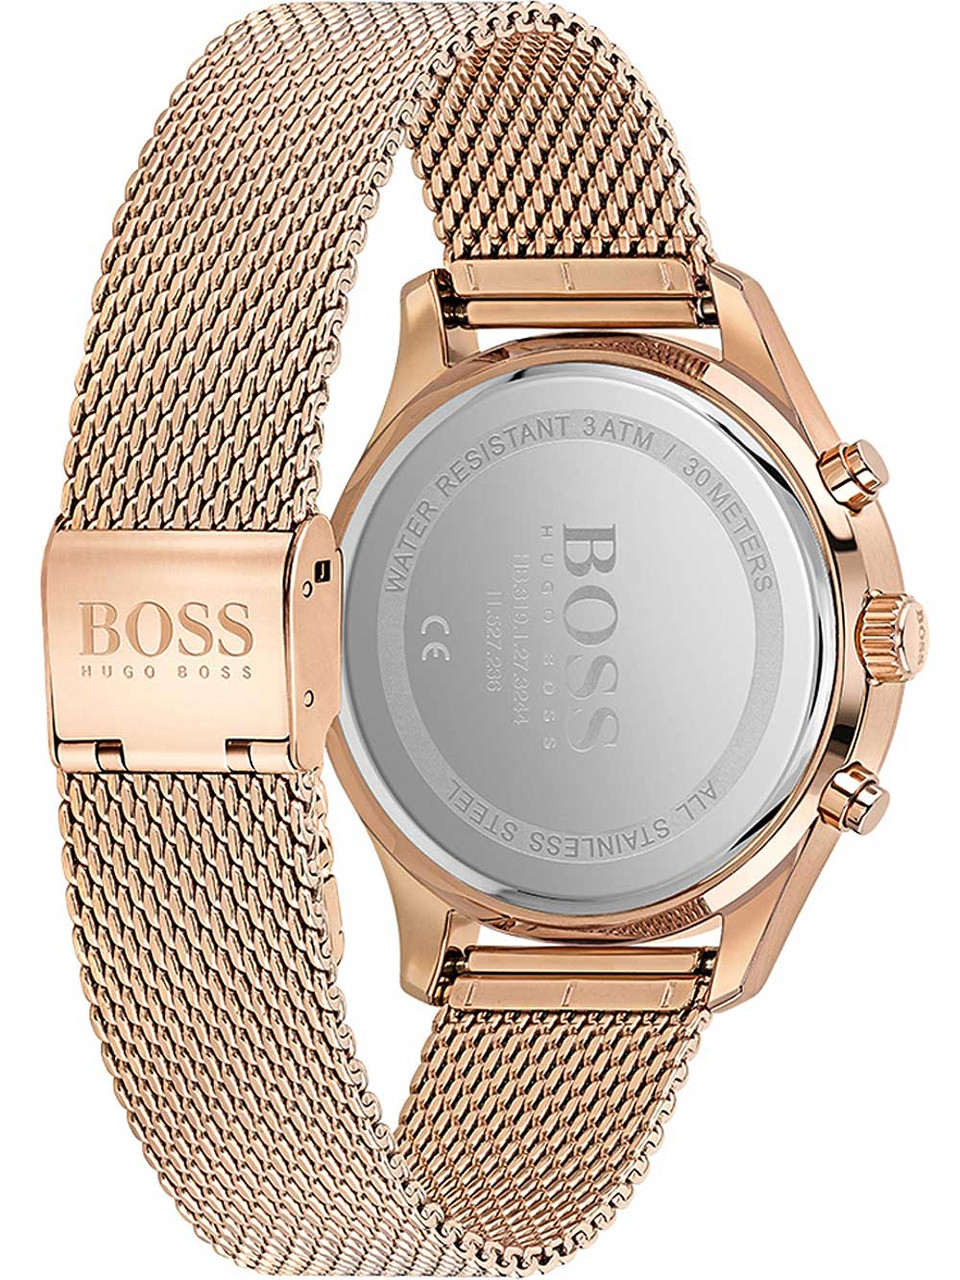 Hugo Boss 1513806 Associate owlica Genuine chronograph | Watches ATM 5 42mm 